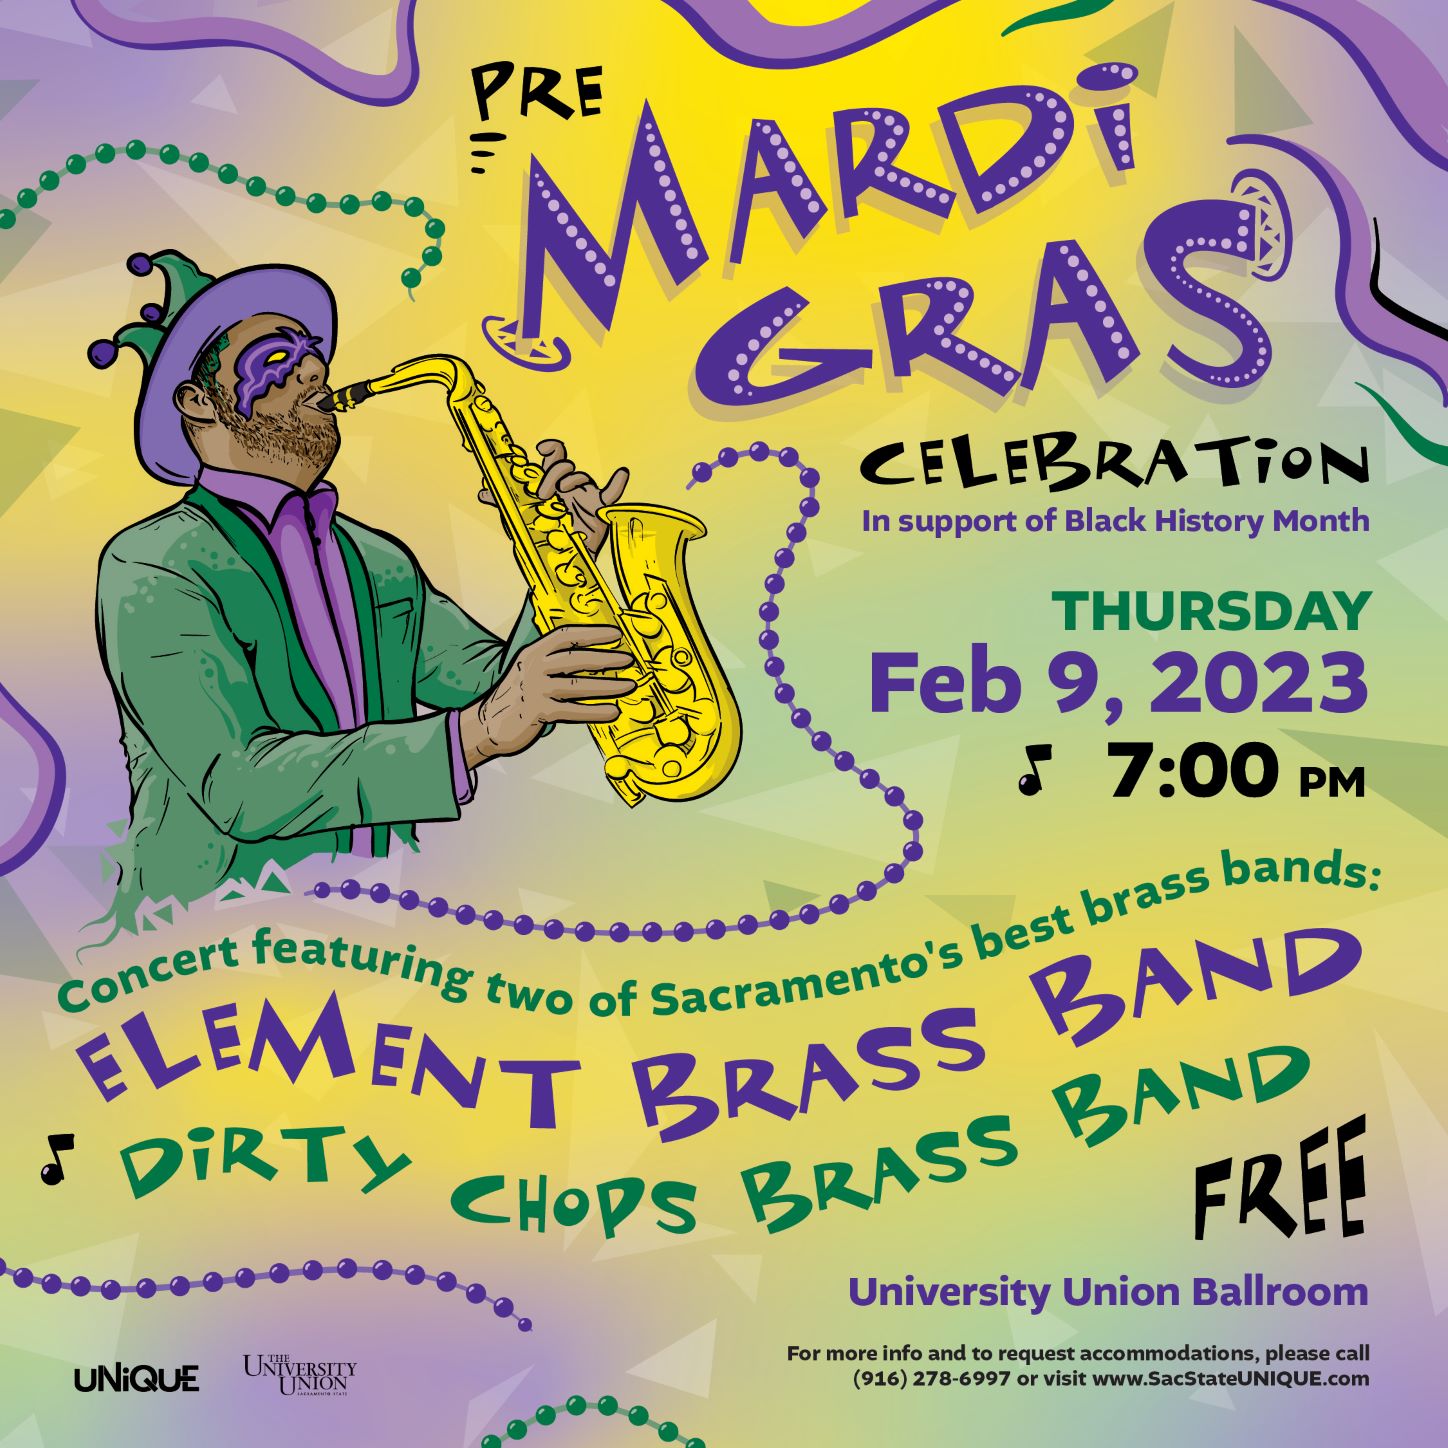 Pre-Mardi Gras Concert feat. Element Brass Band & Dirty Chops Brass Band